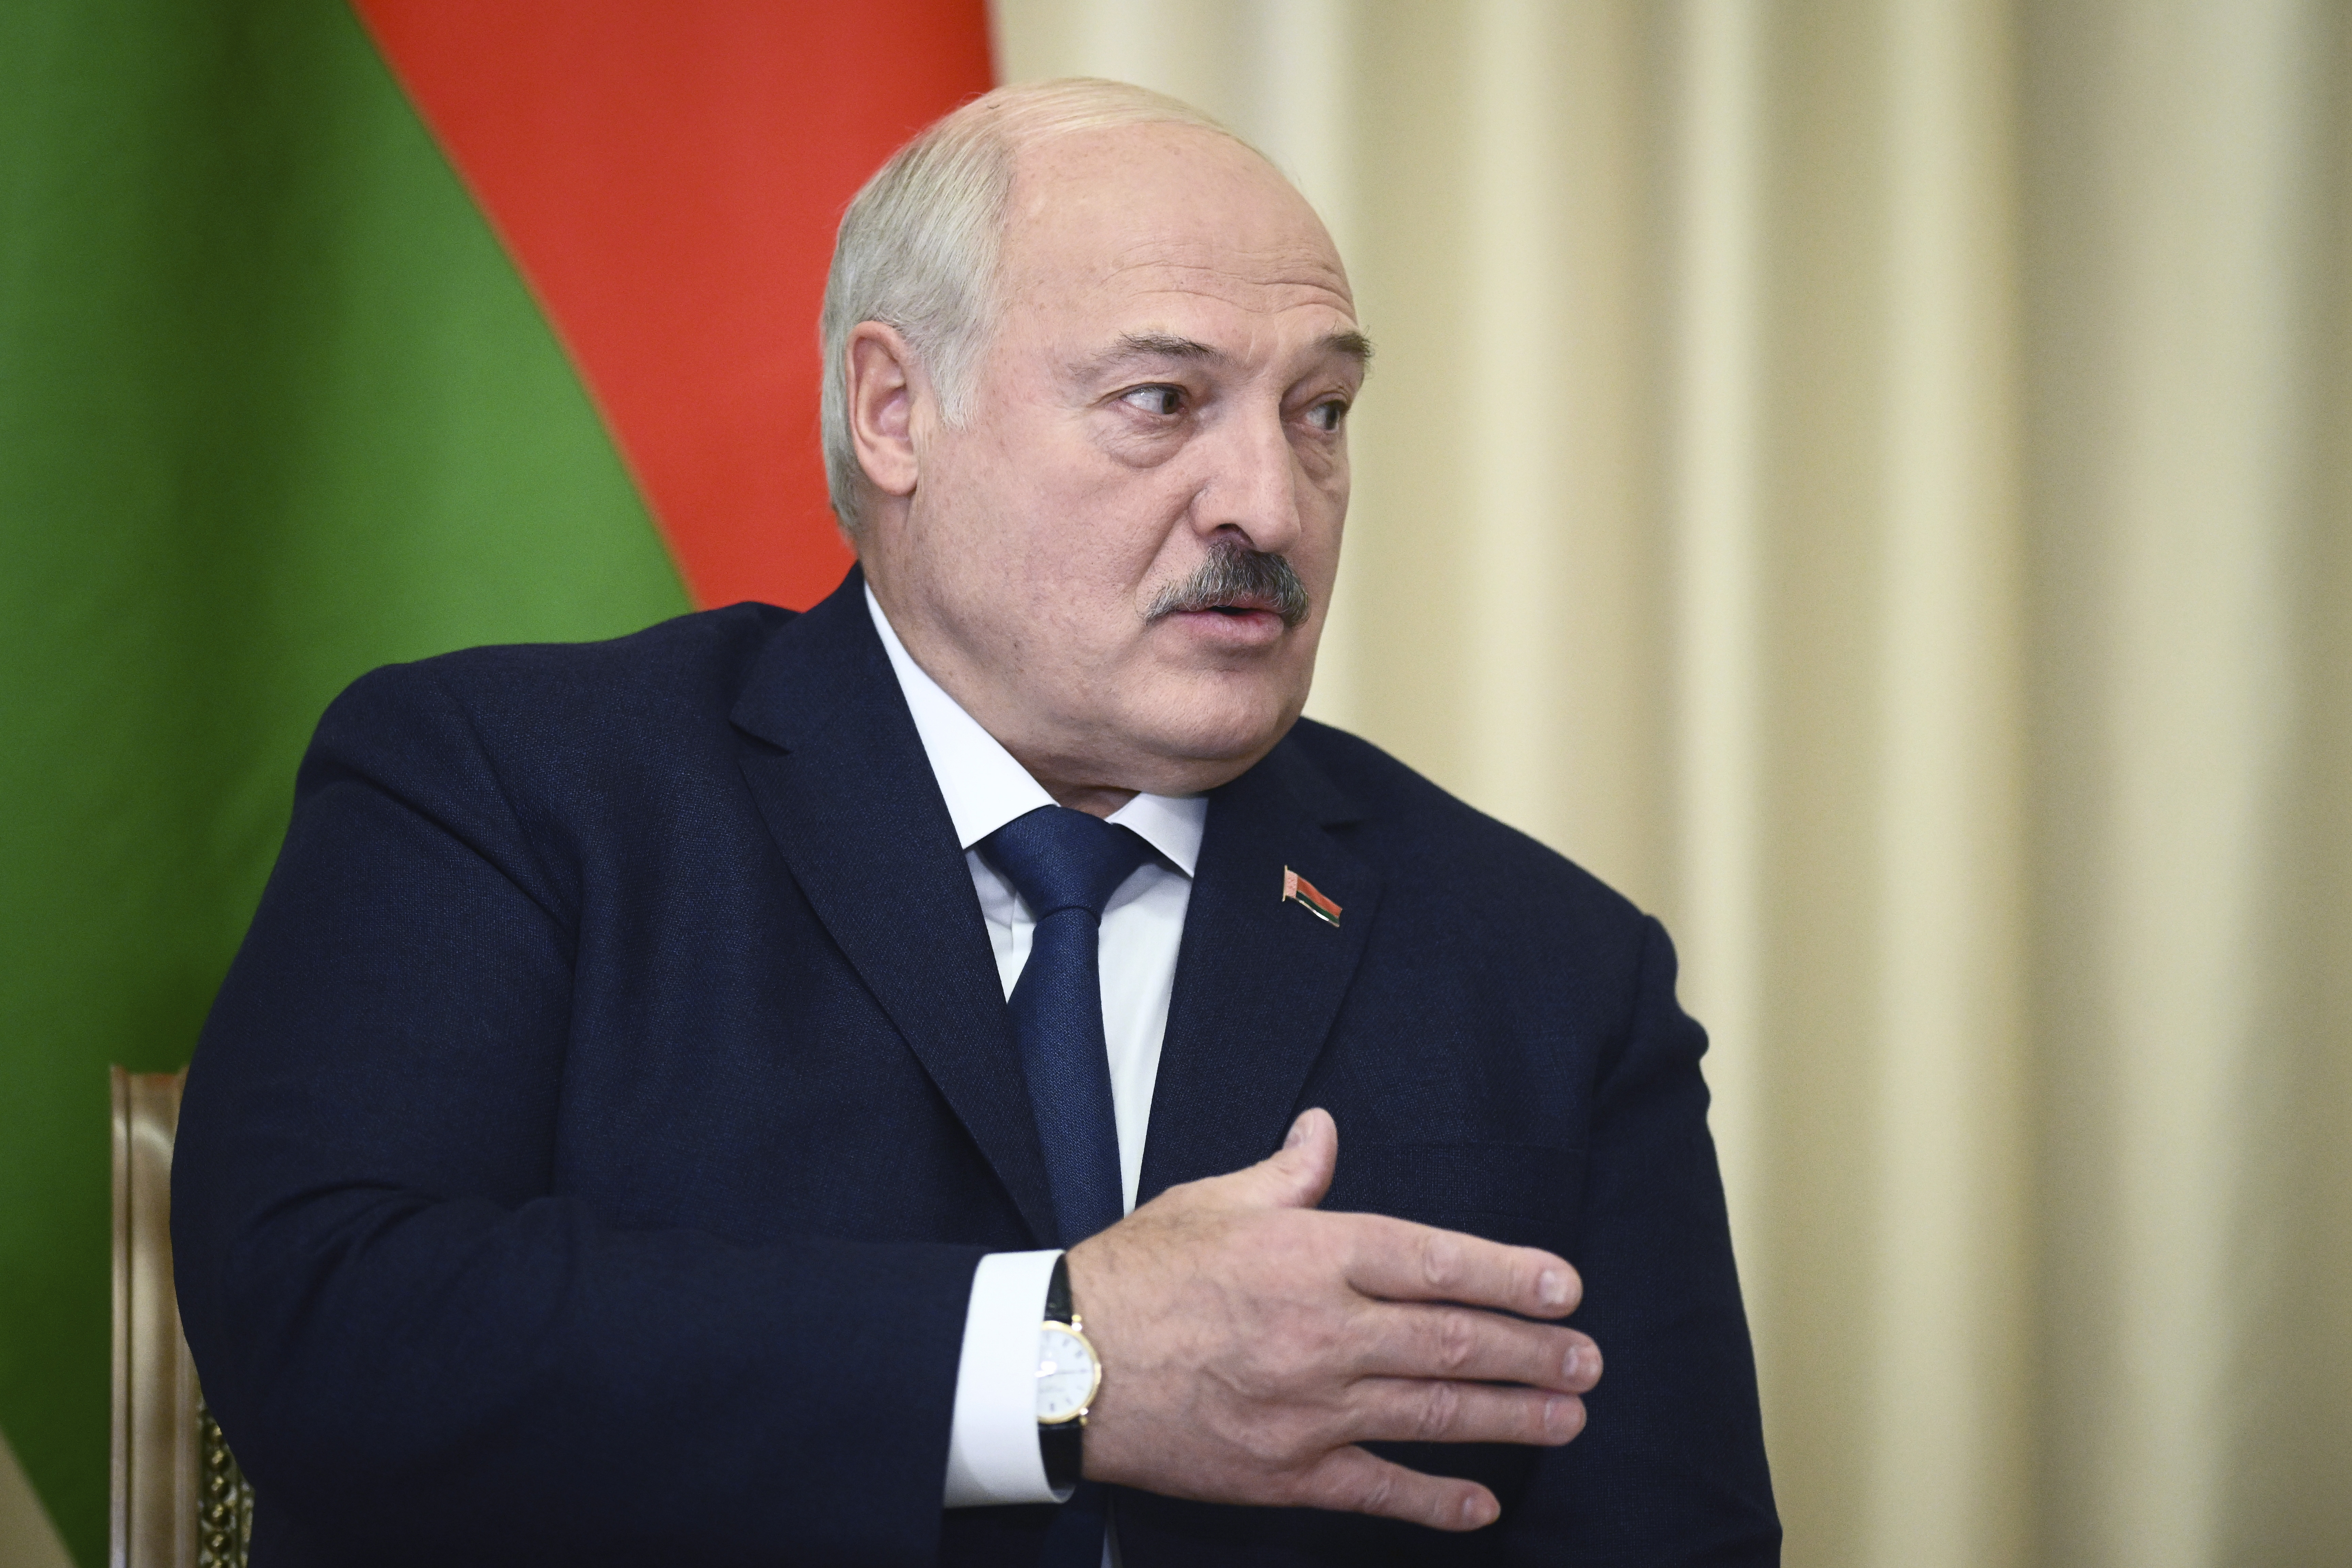 El dictador de Bielorrusia, Alexander Lukashenko. (Vladimir Astapkovich, Sputnik, Kremlin Pool Photo vía AP)